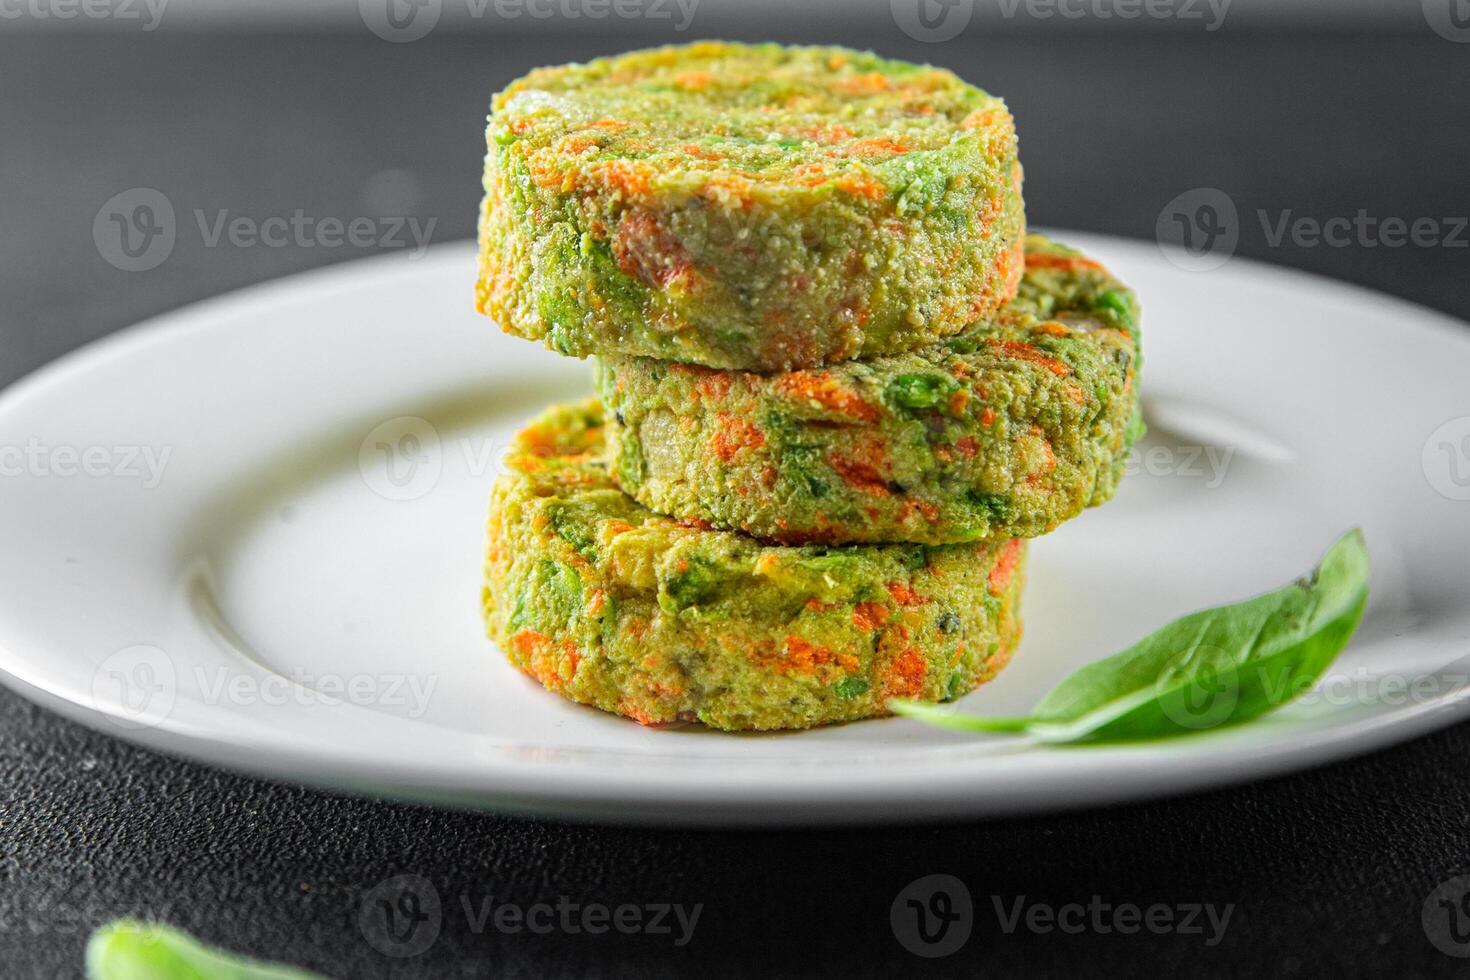 Vegetarier Schnitzel Gemüse Karotte, Brokkoli, Kartoffeln frisch vegan Essen lecker gesund Essen Mahlzeit foto